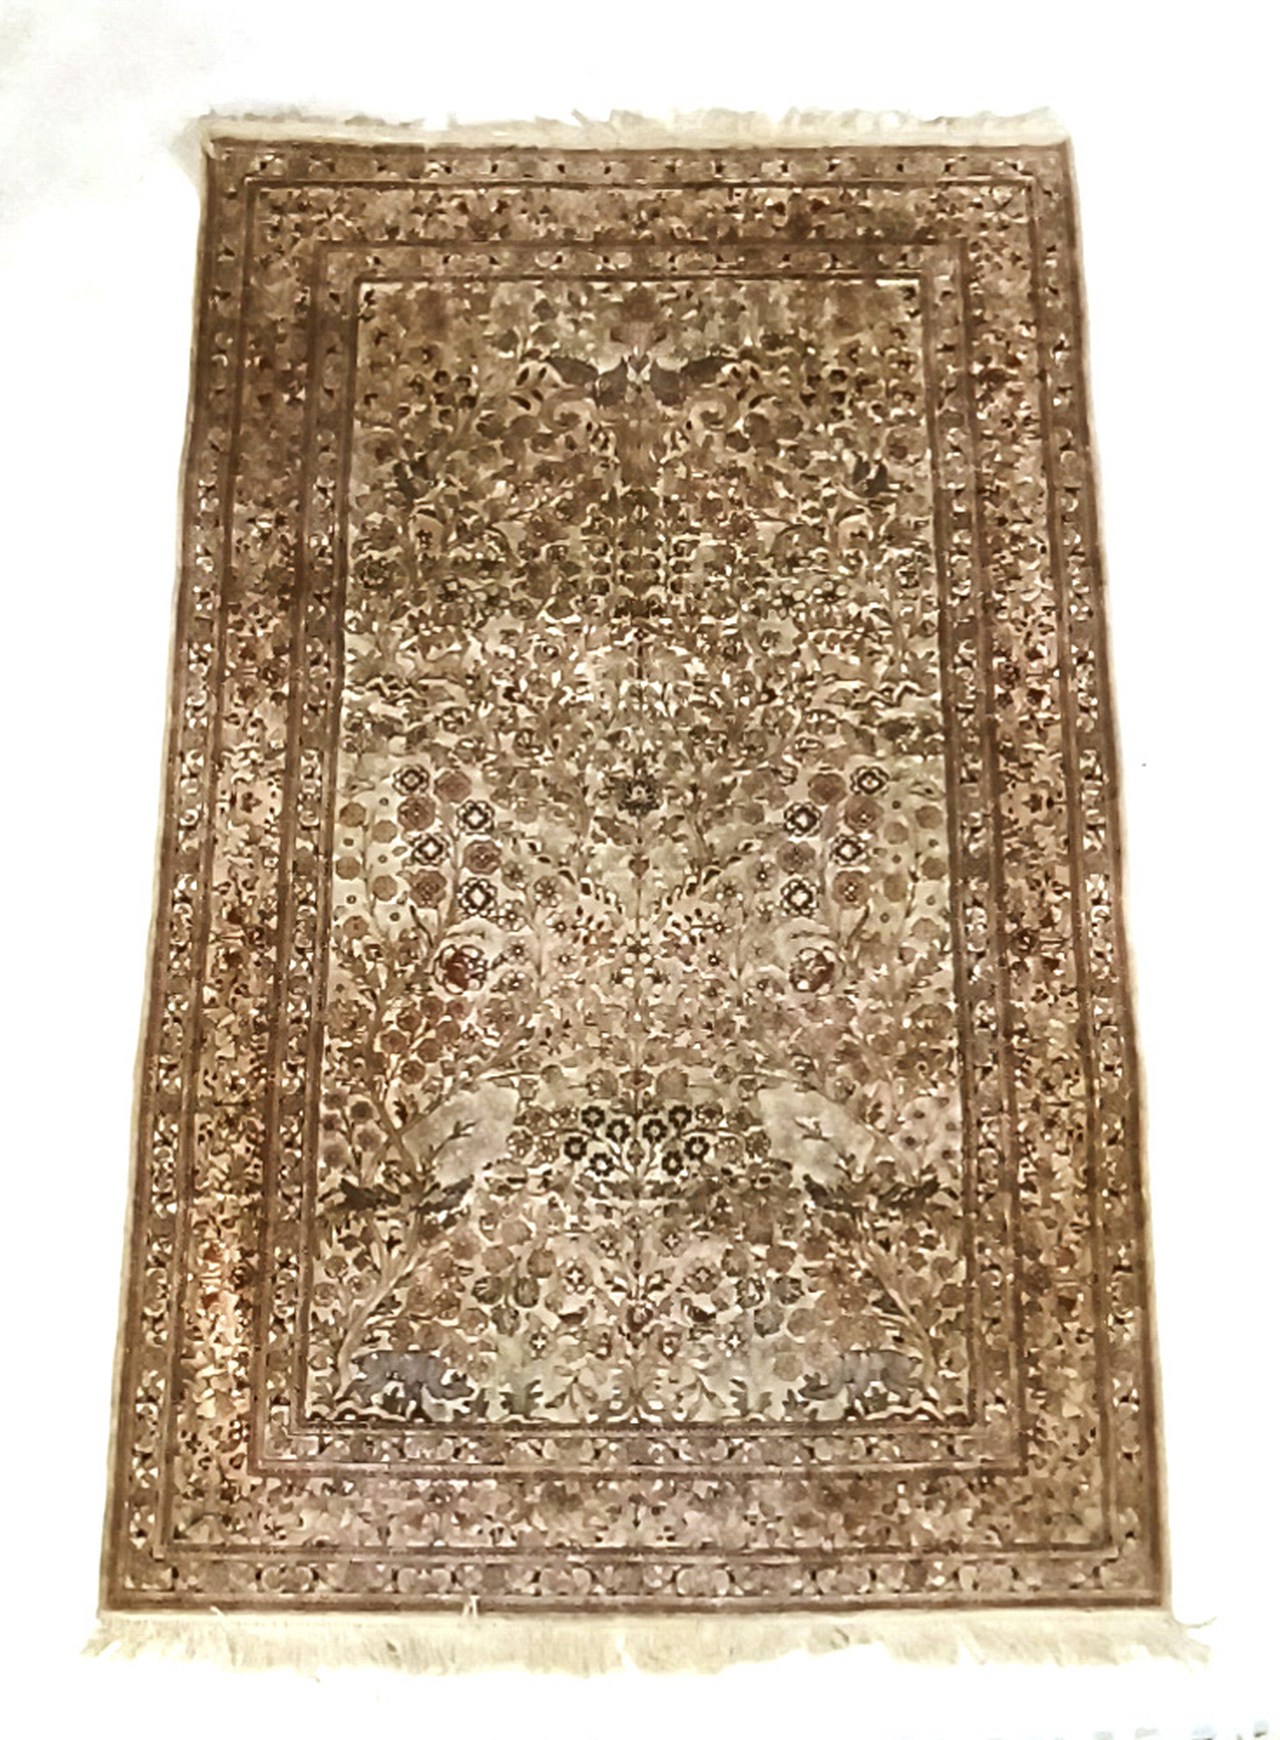 Perzisch tapijt (zijde), 160 x 95 cm.